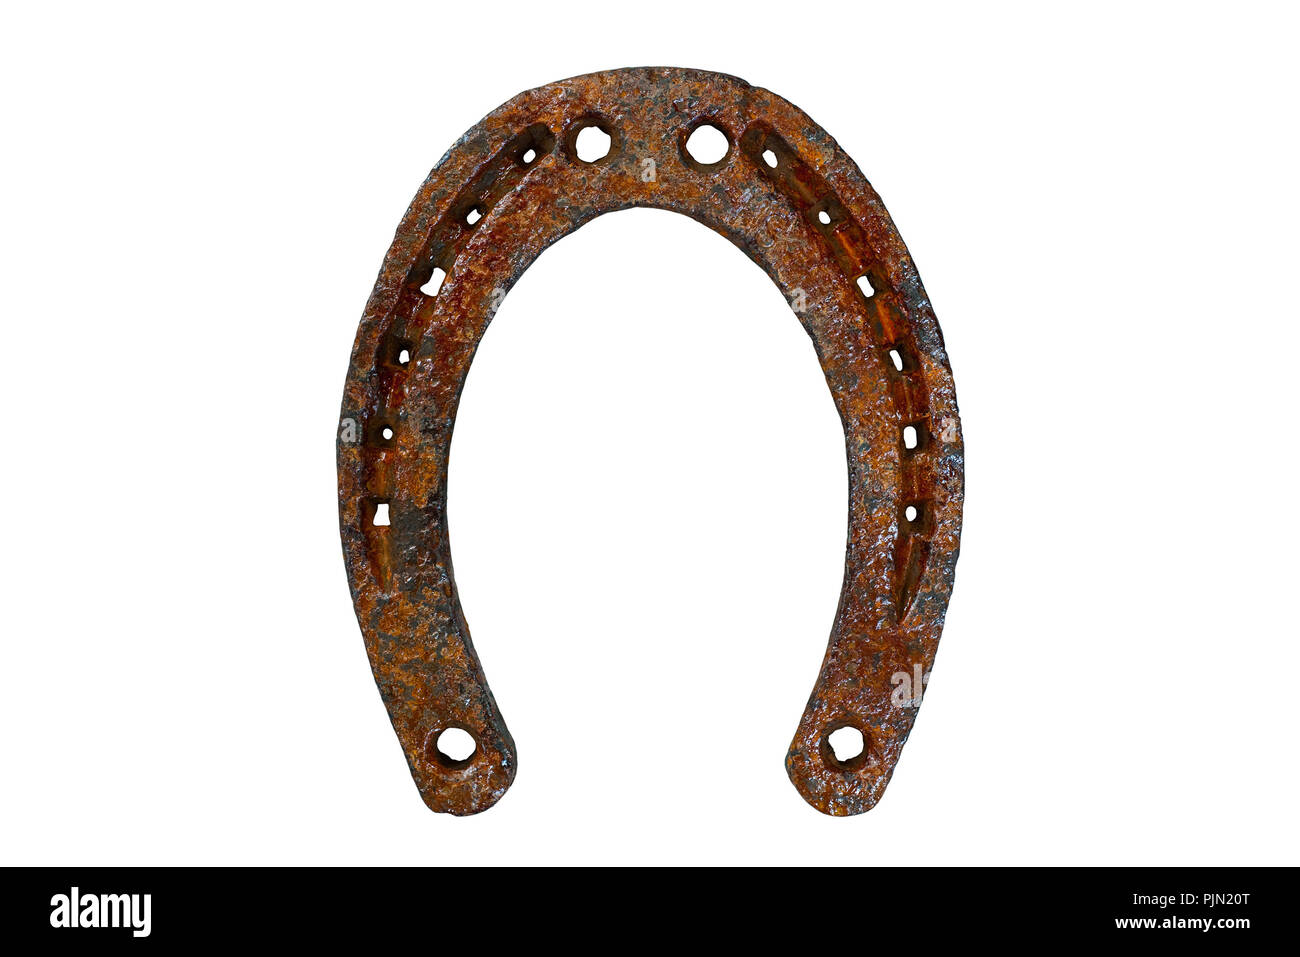 old rusty horseshoe isolated on white background Stock Photo